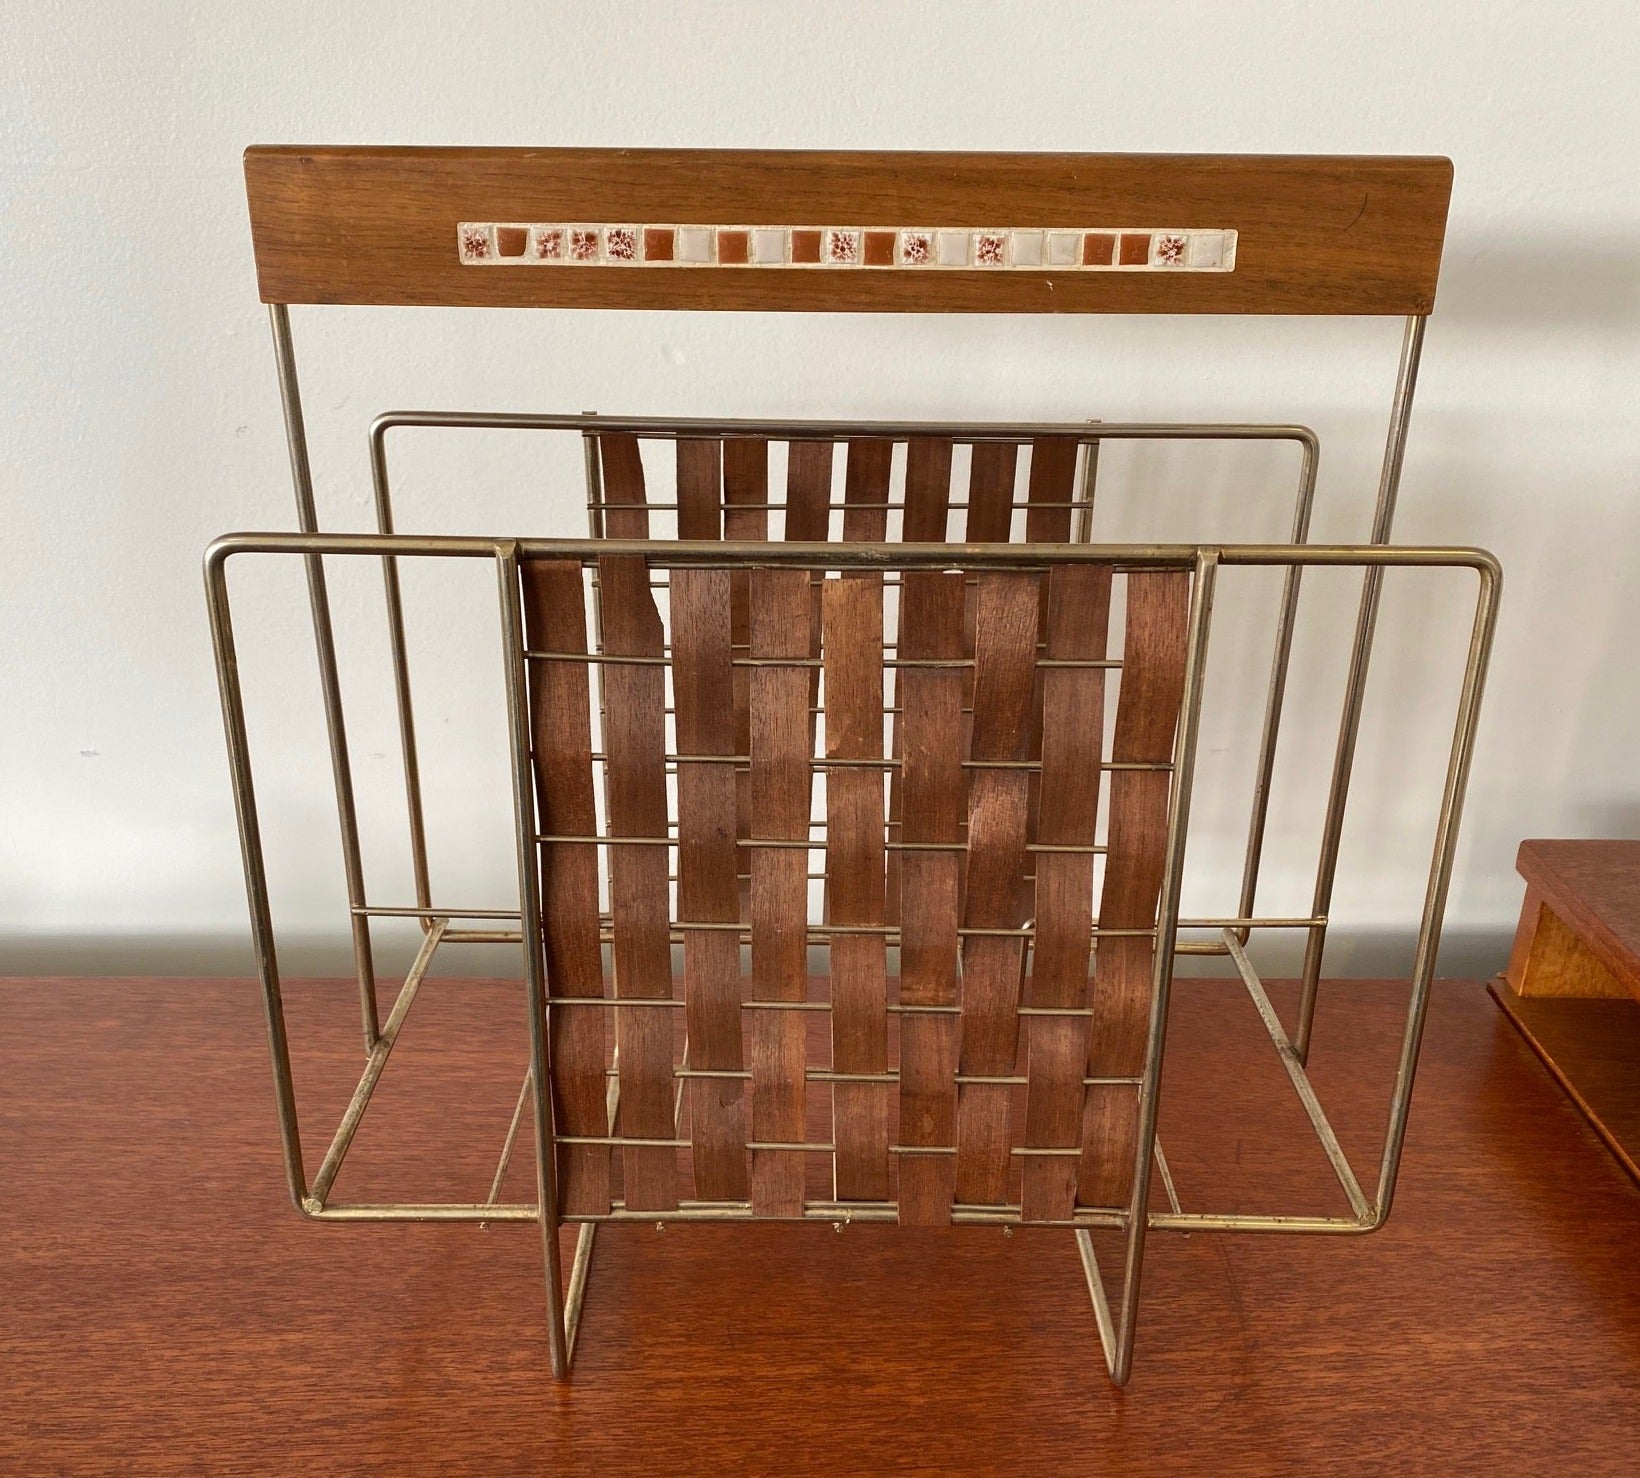 MCM teak basket weave magazine rack with tile detail- Cook Street Vintage